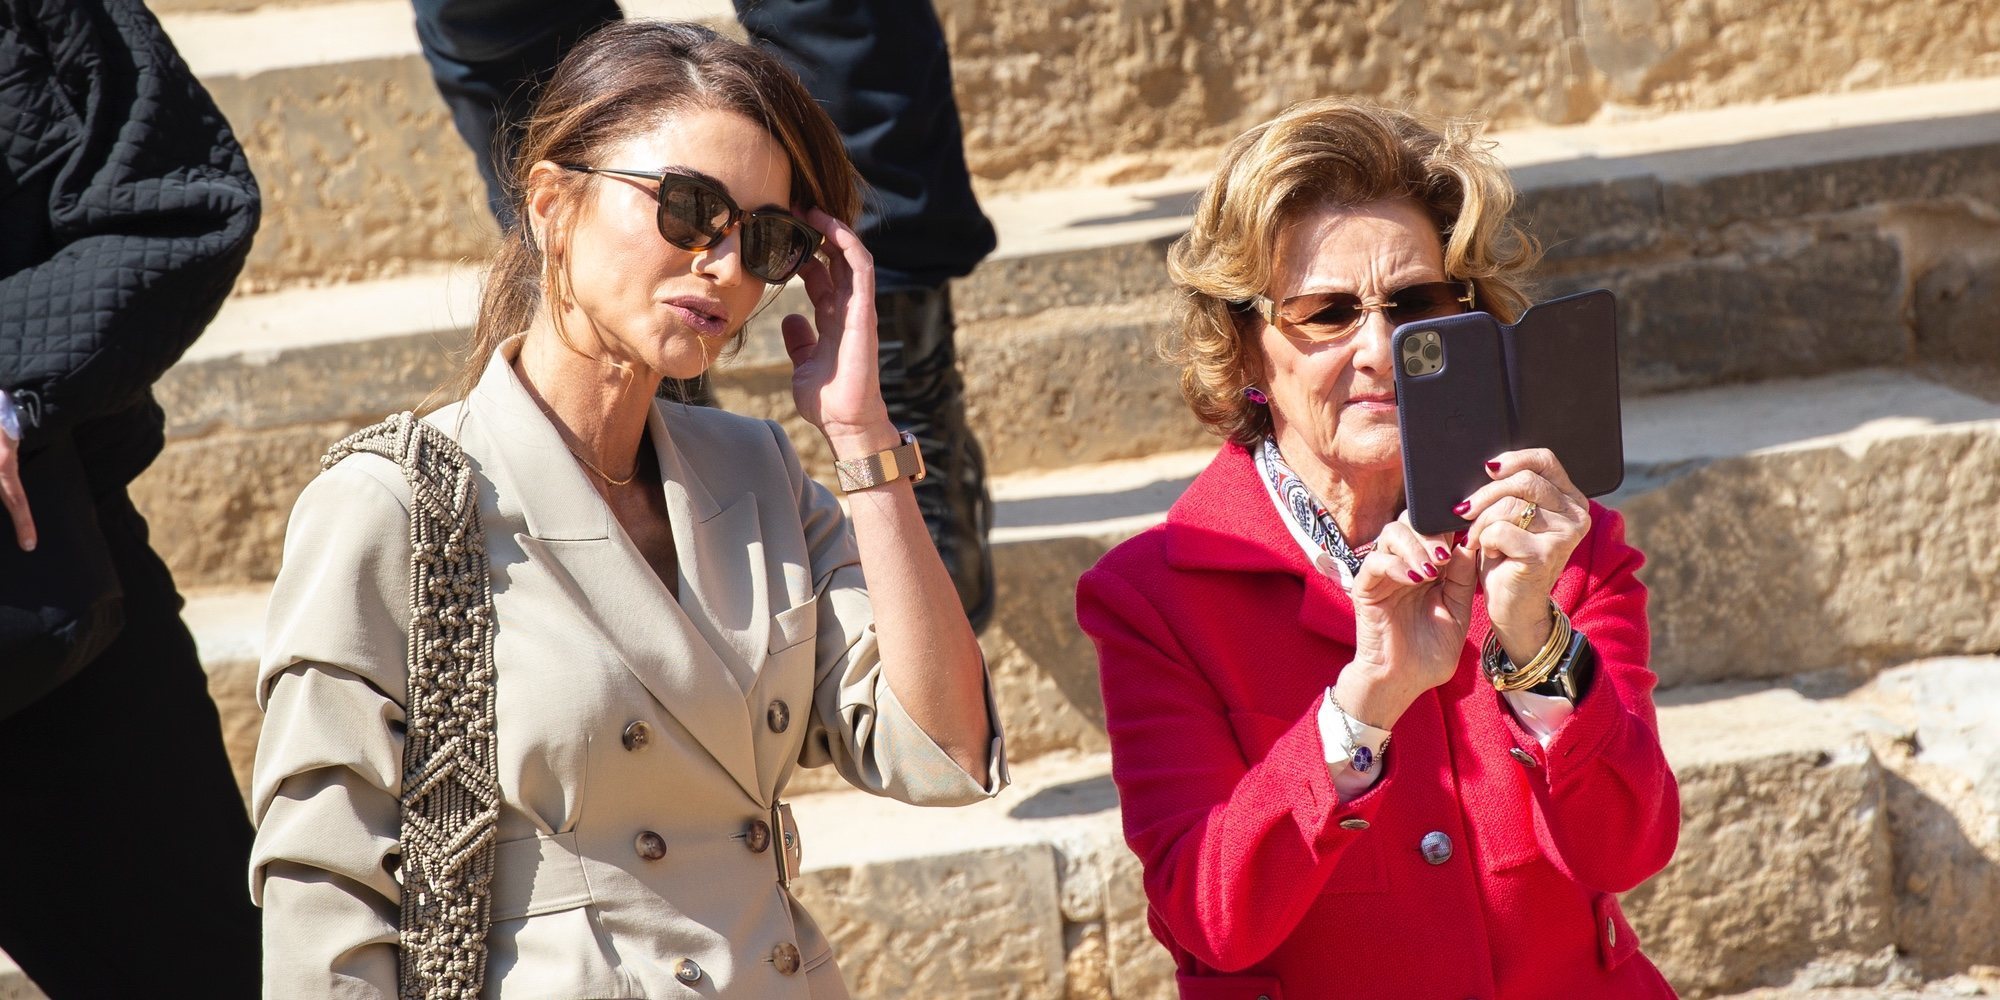 Sonia de Noruega, una reina turista junto a Rania de Jordania en su Visita de Estado a Jordania